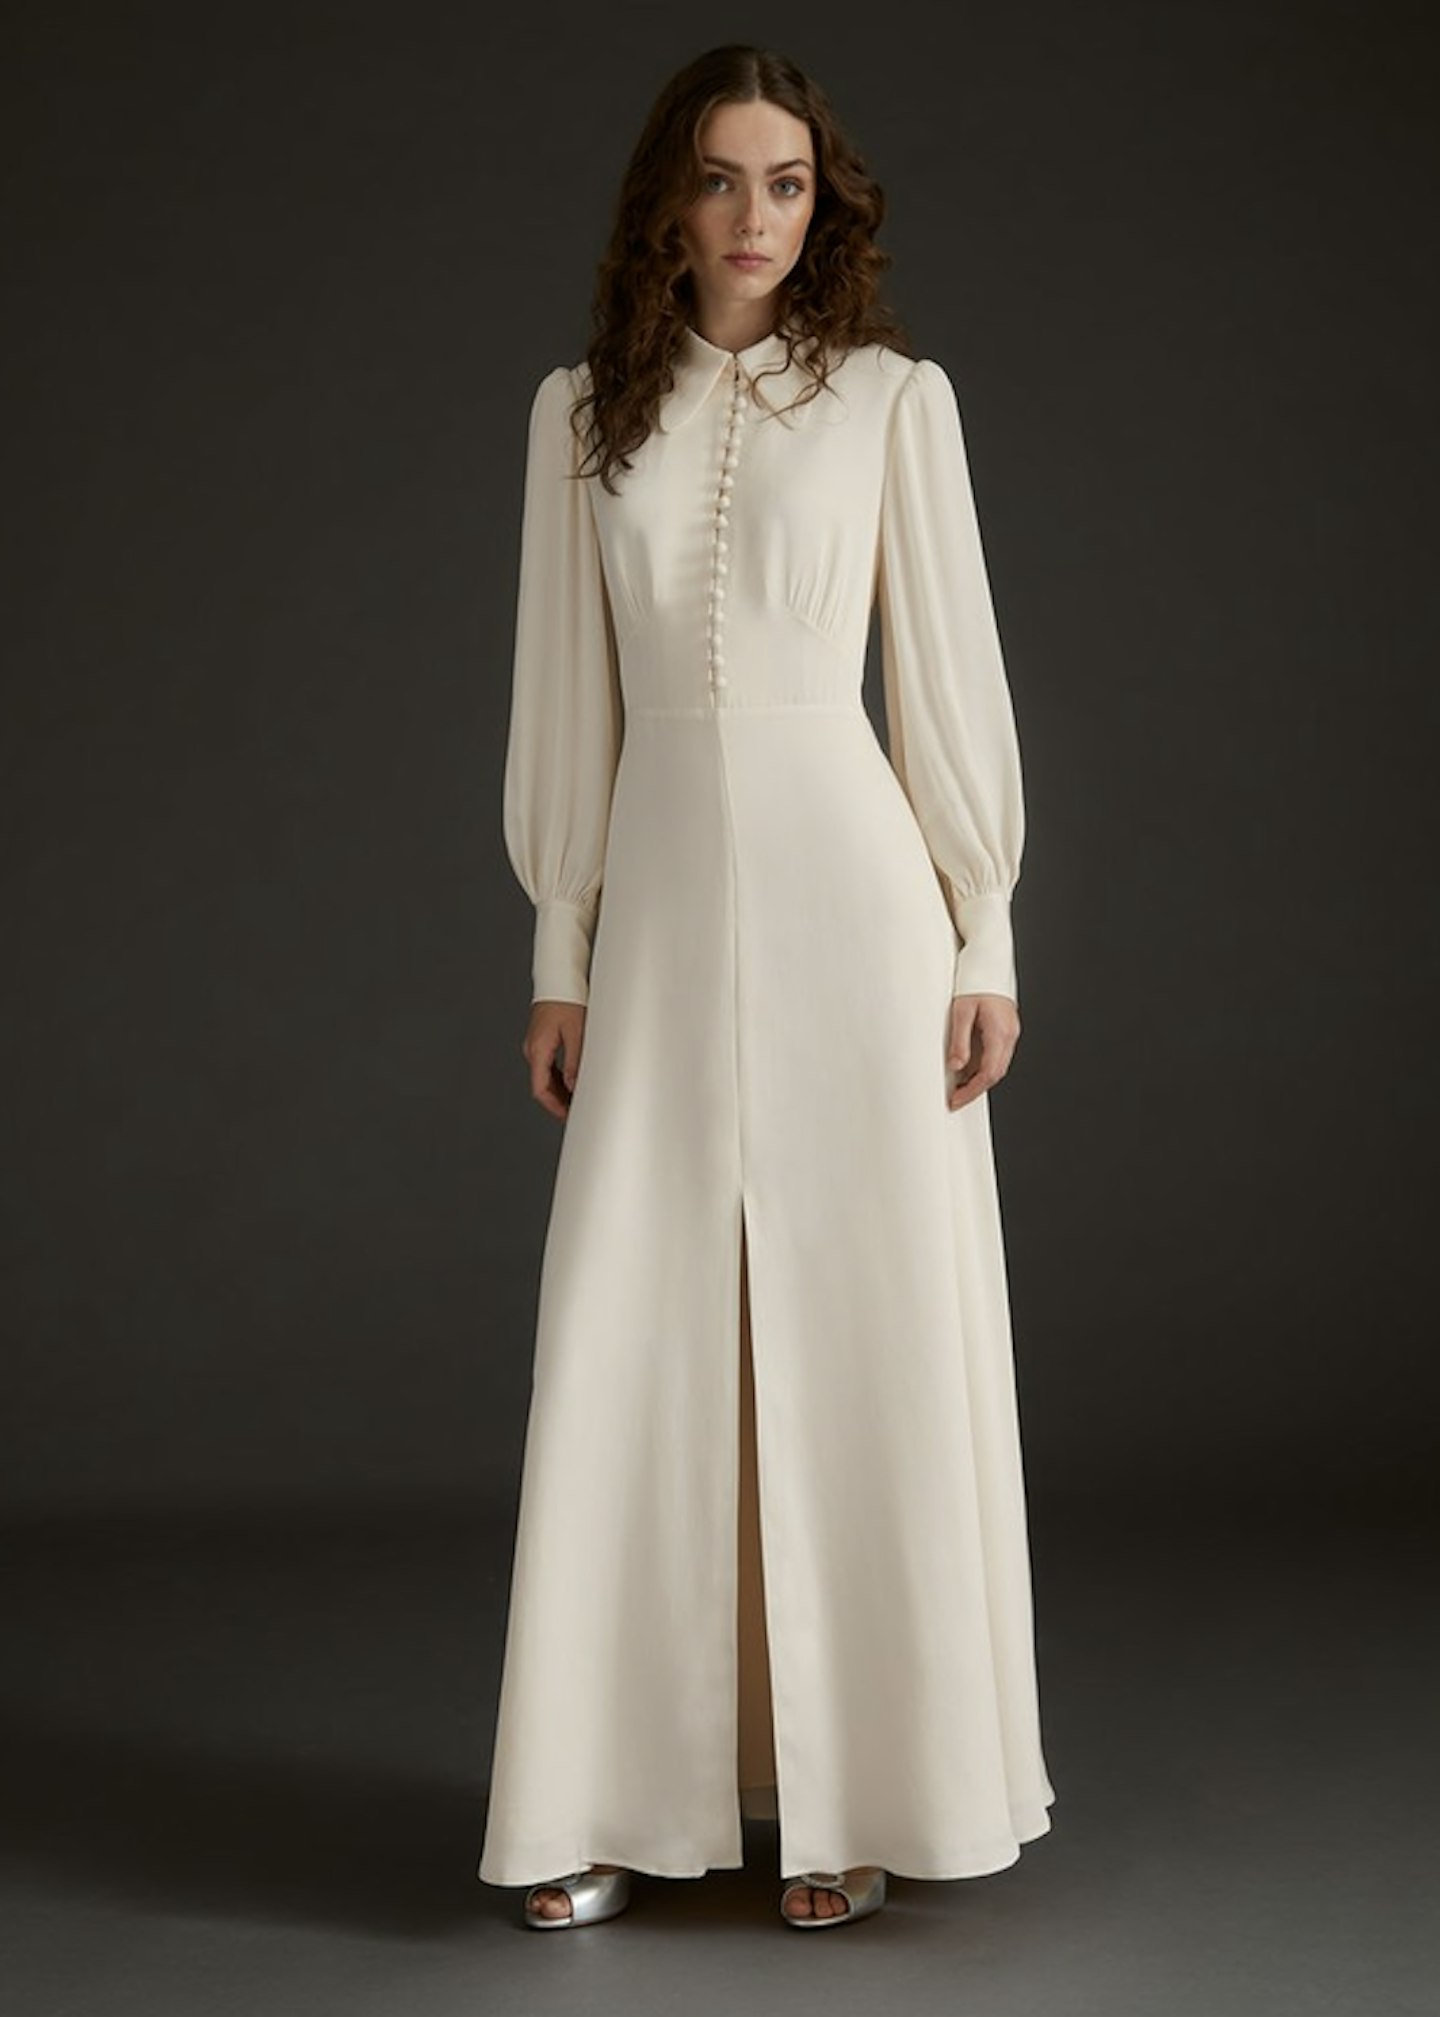 LK Bennett, Harlow Ivory Satin Crepe Long Wedding Dress